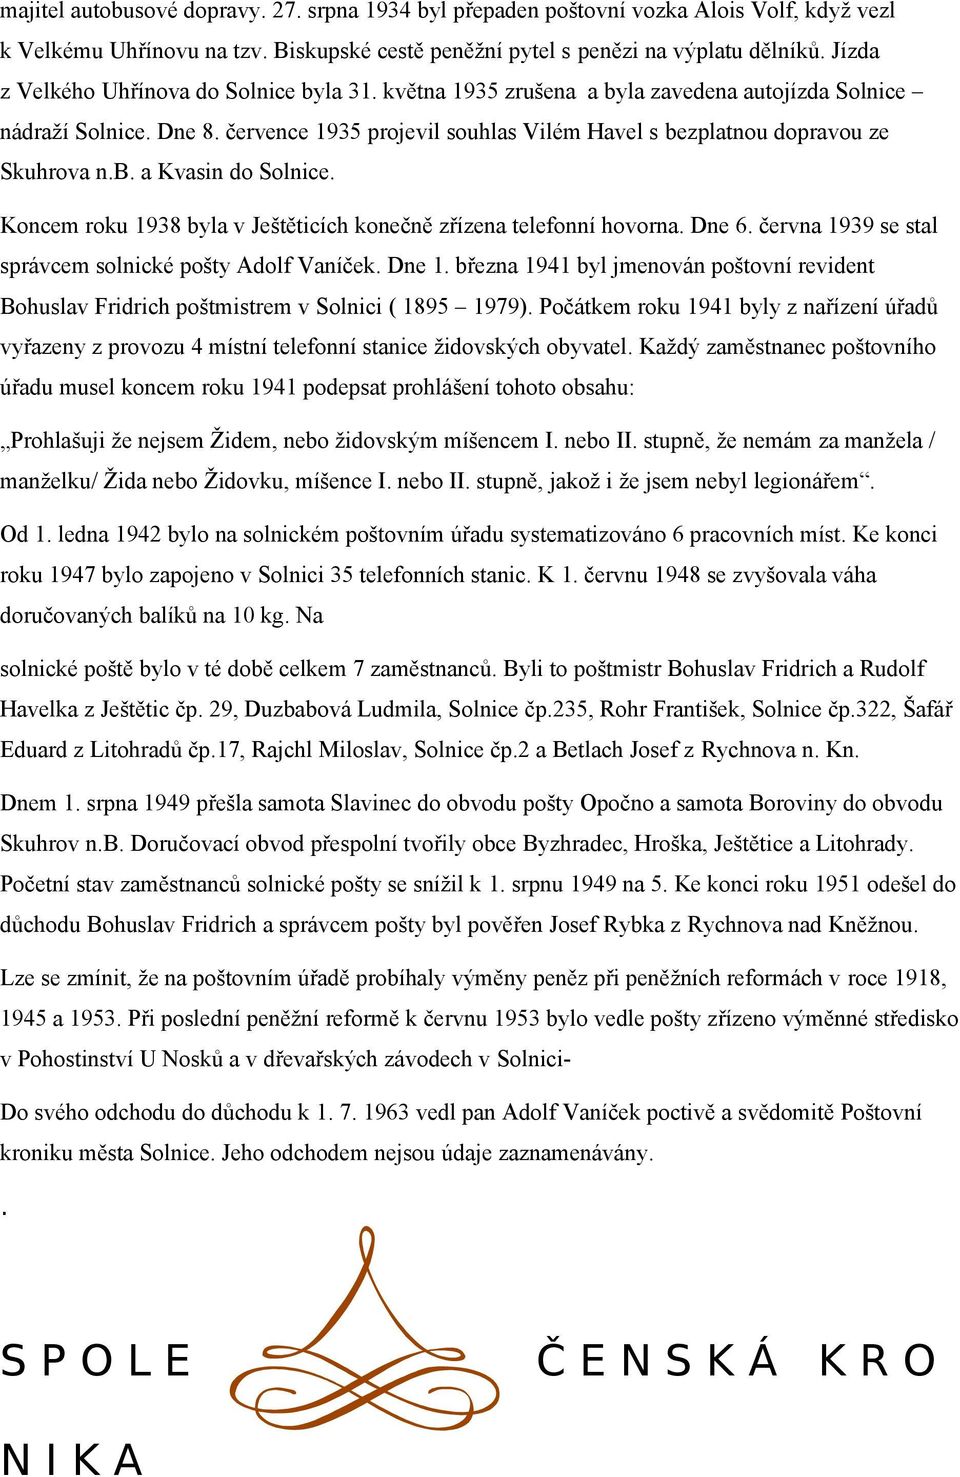 července 1935 projevil souhlas Vilém Havel s bezplatnou dopravou ze Skuhrova n.b. a Kvasin do Solnice. Koncem roku 1938 byla v Ještěticích konečně zřízena telefonní hovorna. Dne 6.